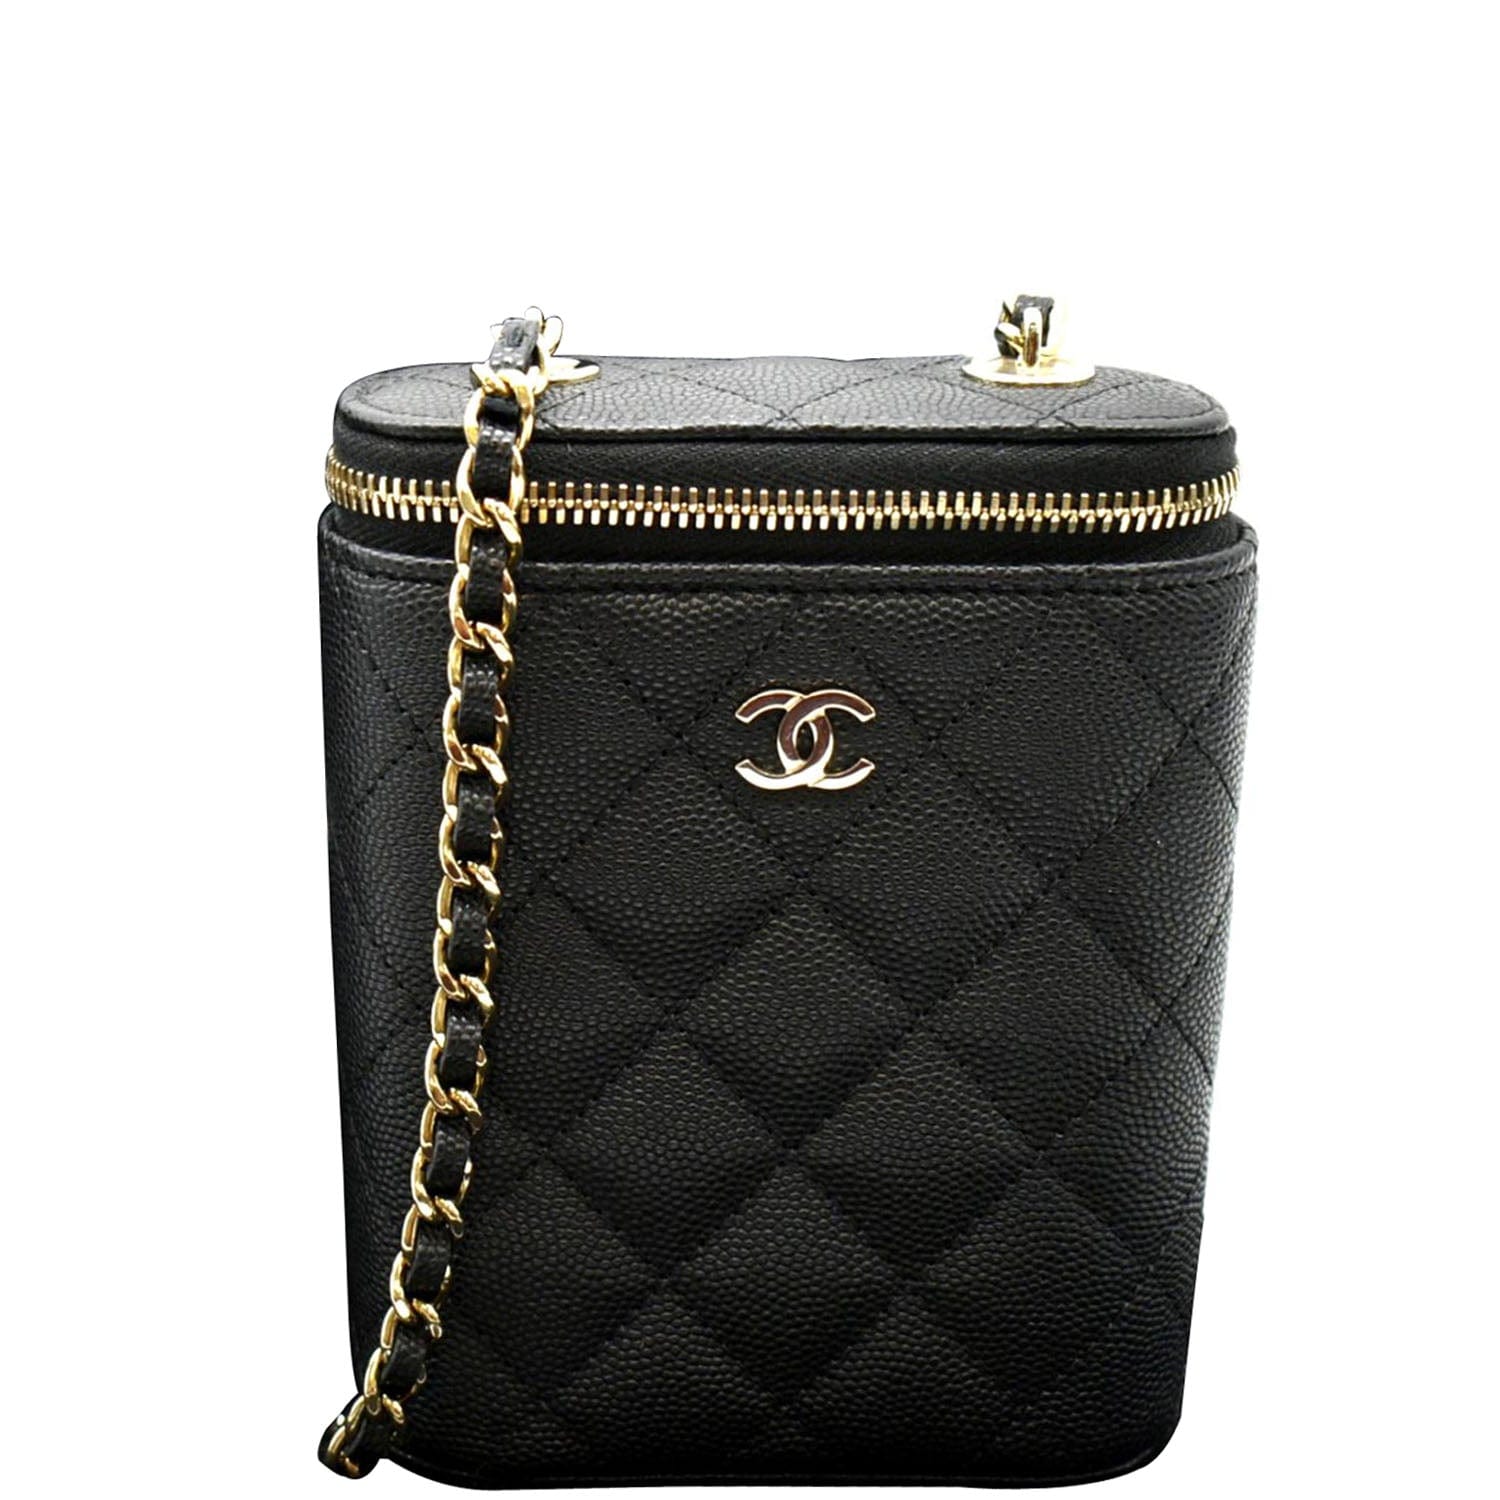 Chanel Small Vanity w/Chain - Black Mini Bags, Handbags